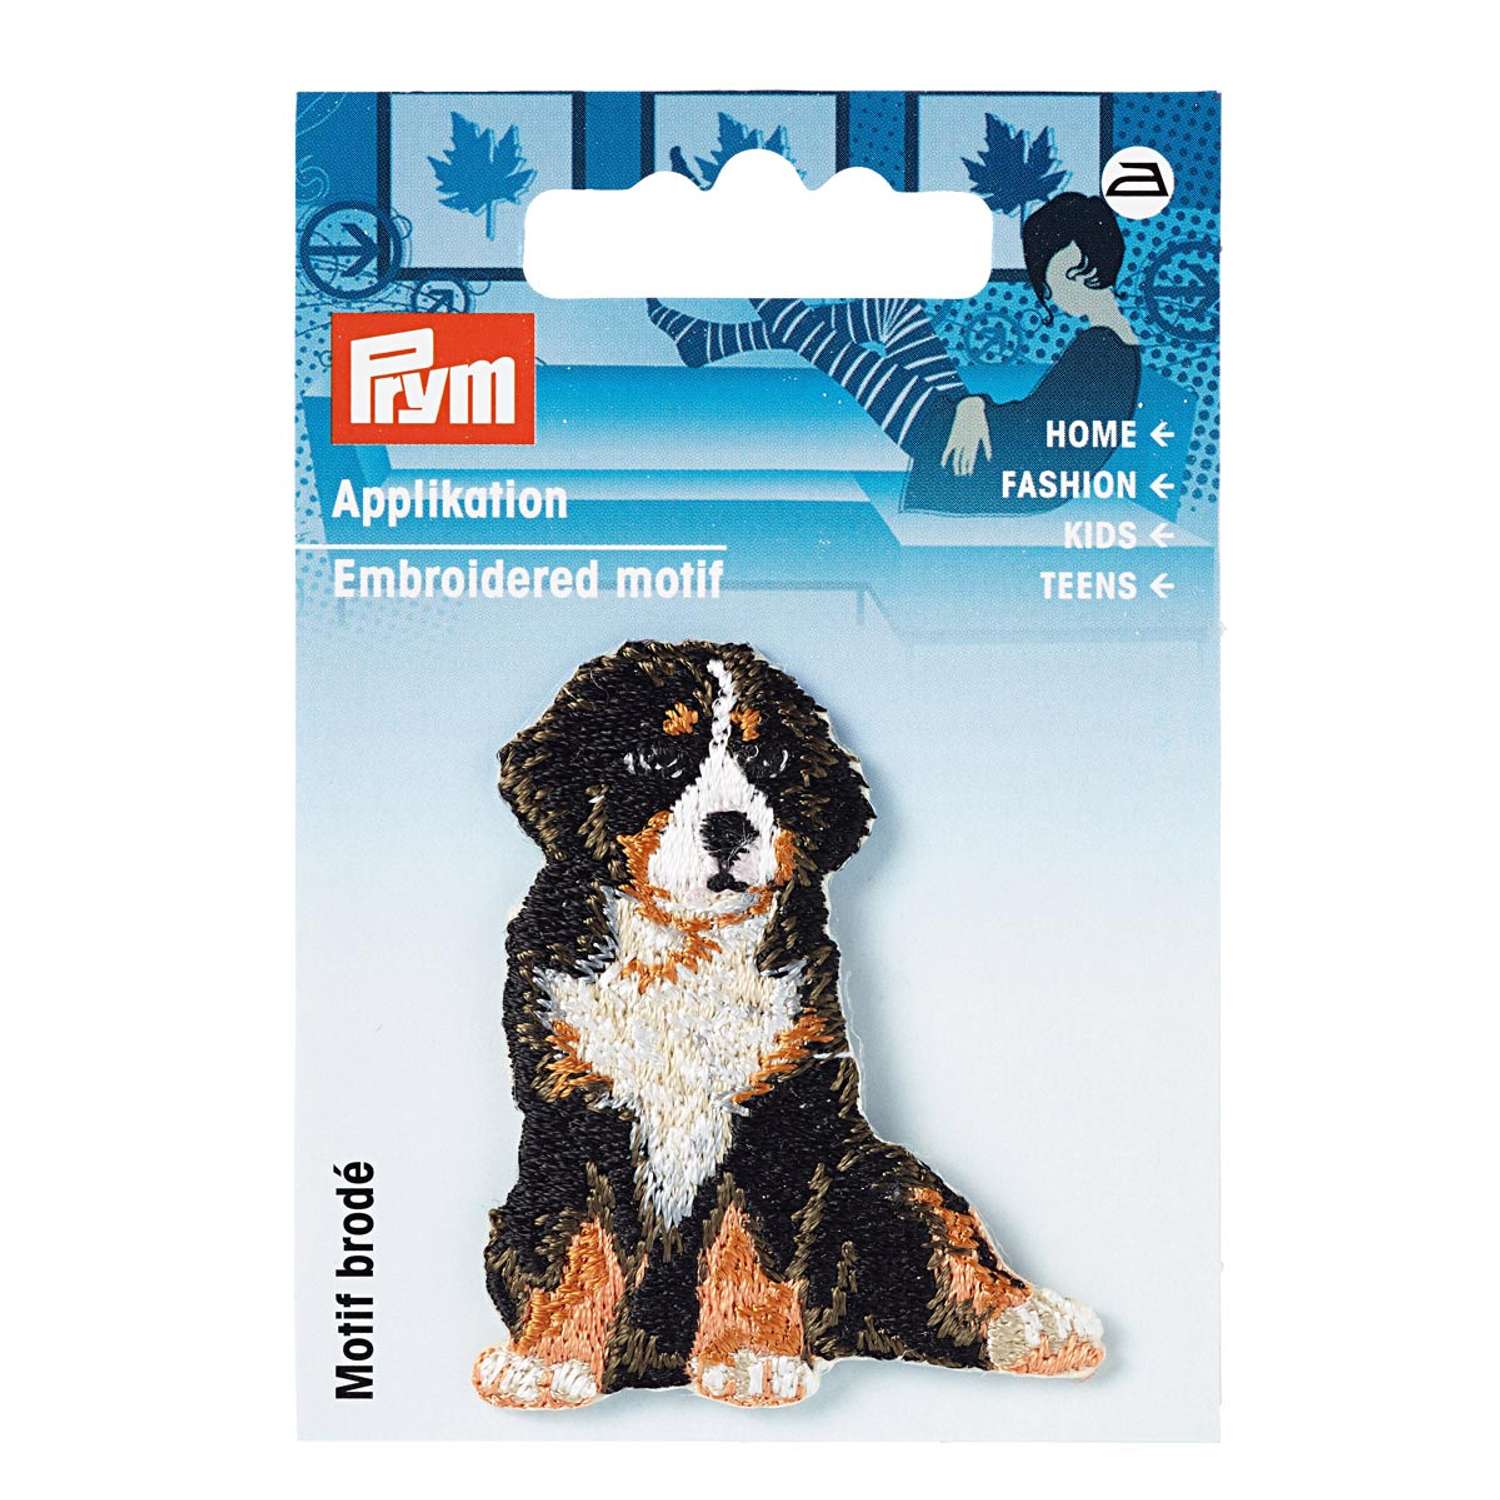 Термоаппликация Prym нашивка Альпийская собака 5.5х4.4 см для ремонта и украшения одежды 925578 - фото 10